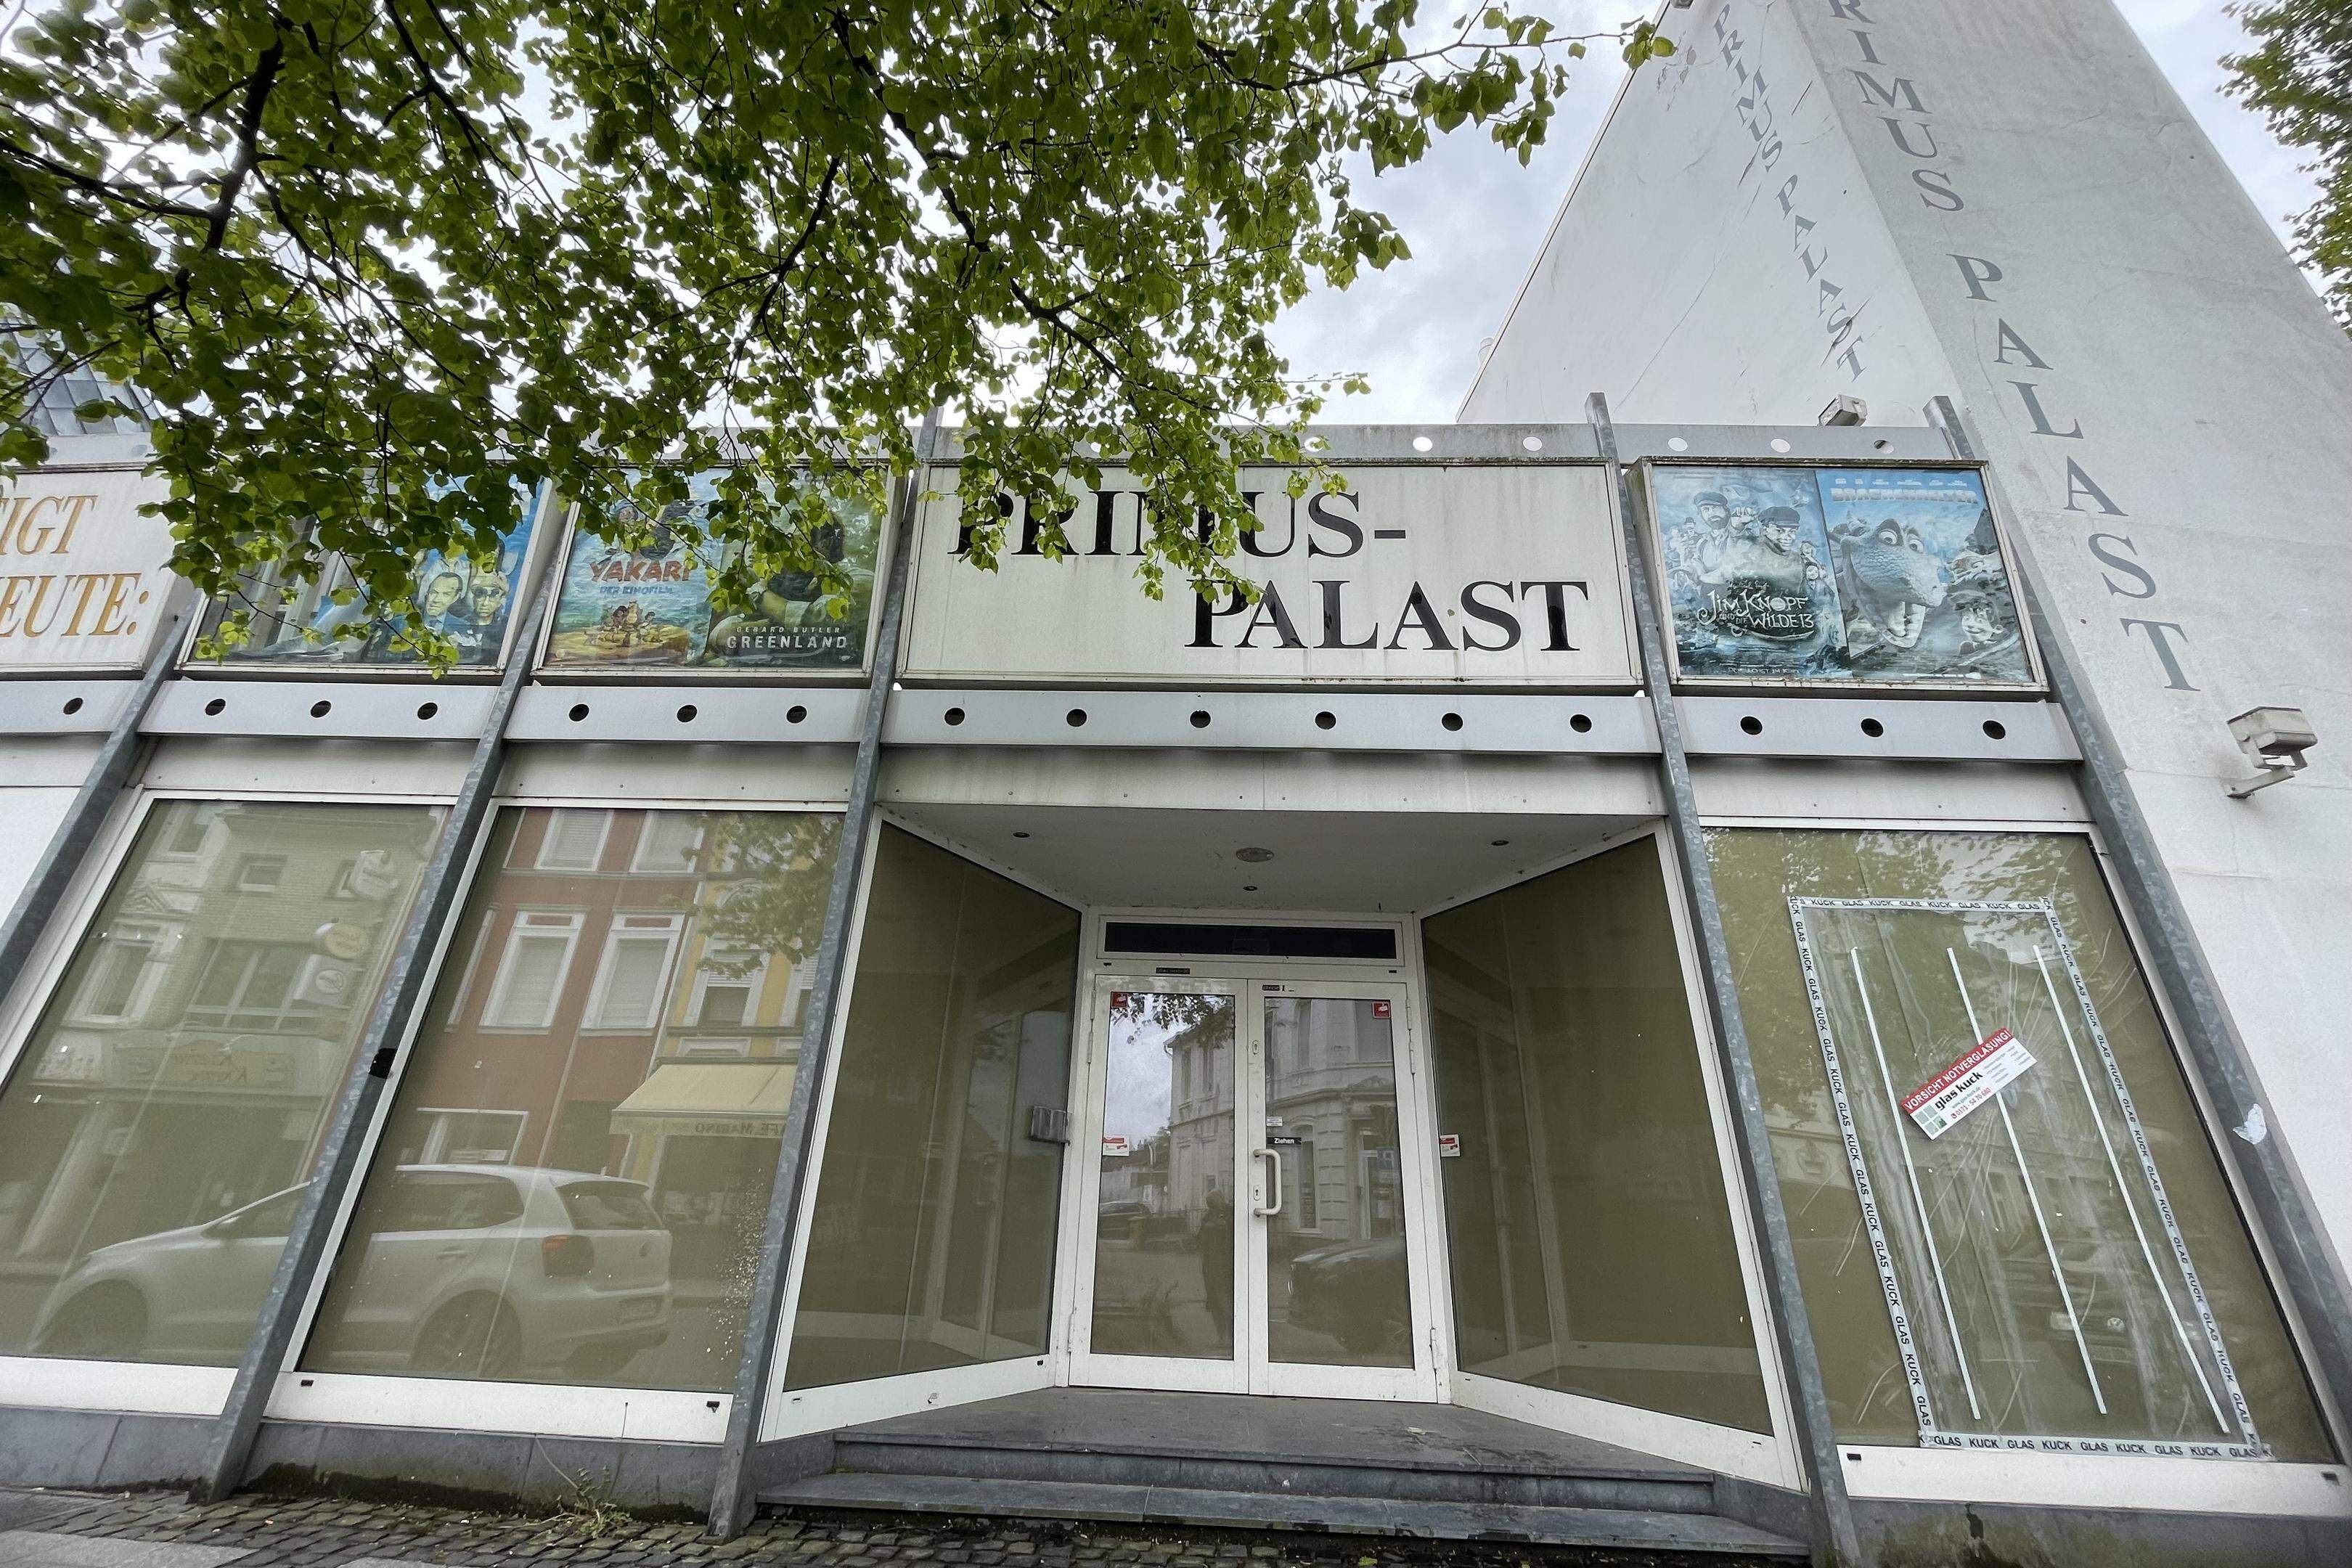 Der Primus Palast in Eschweiler steht seit November 2020 leer.